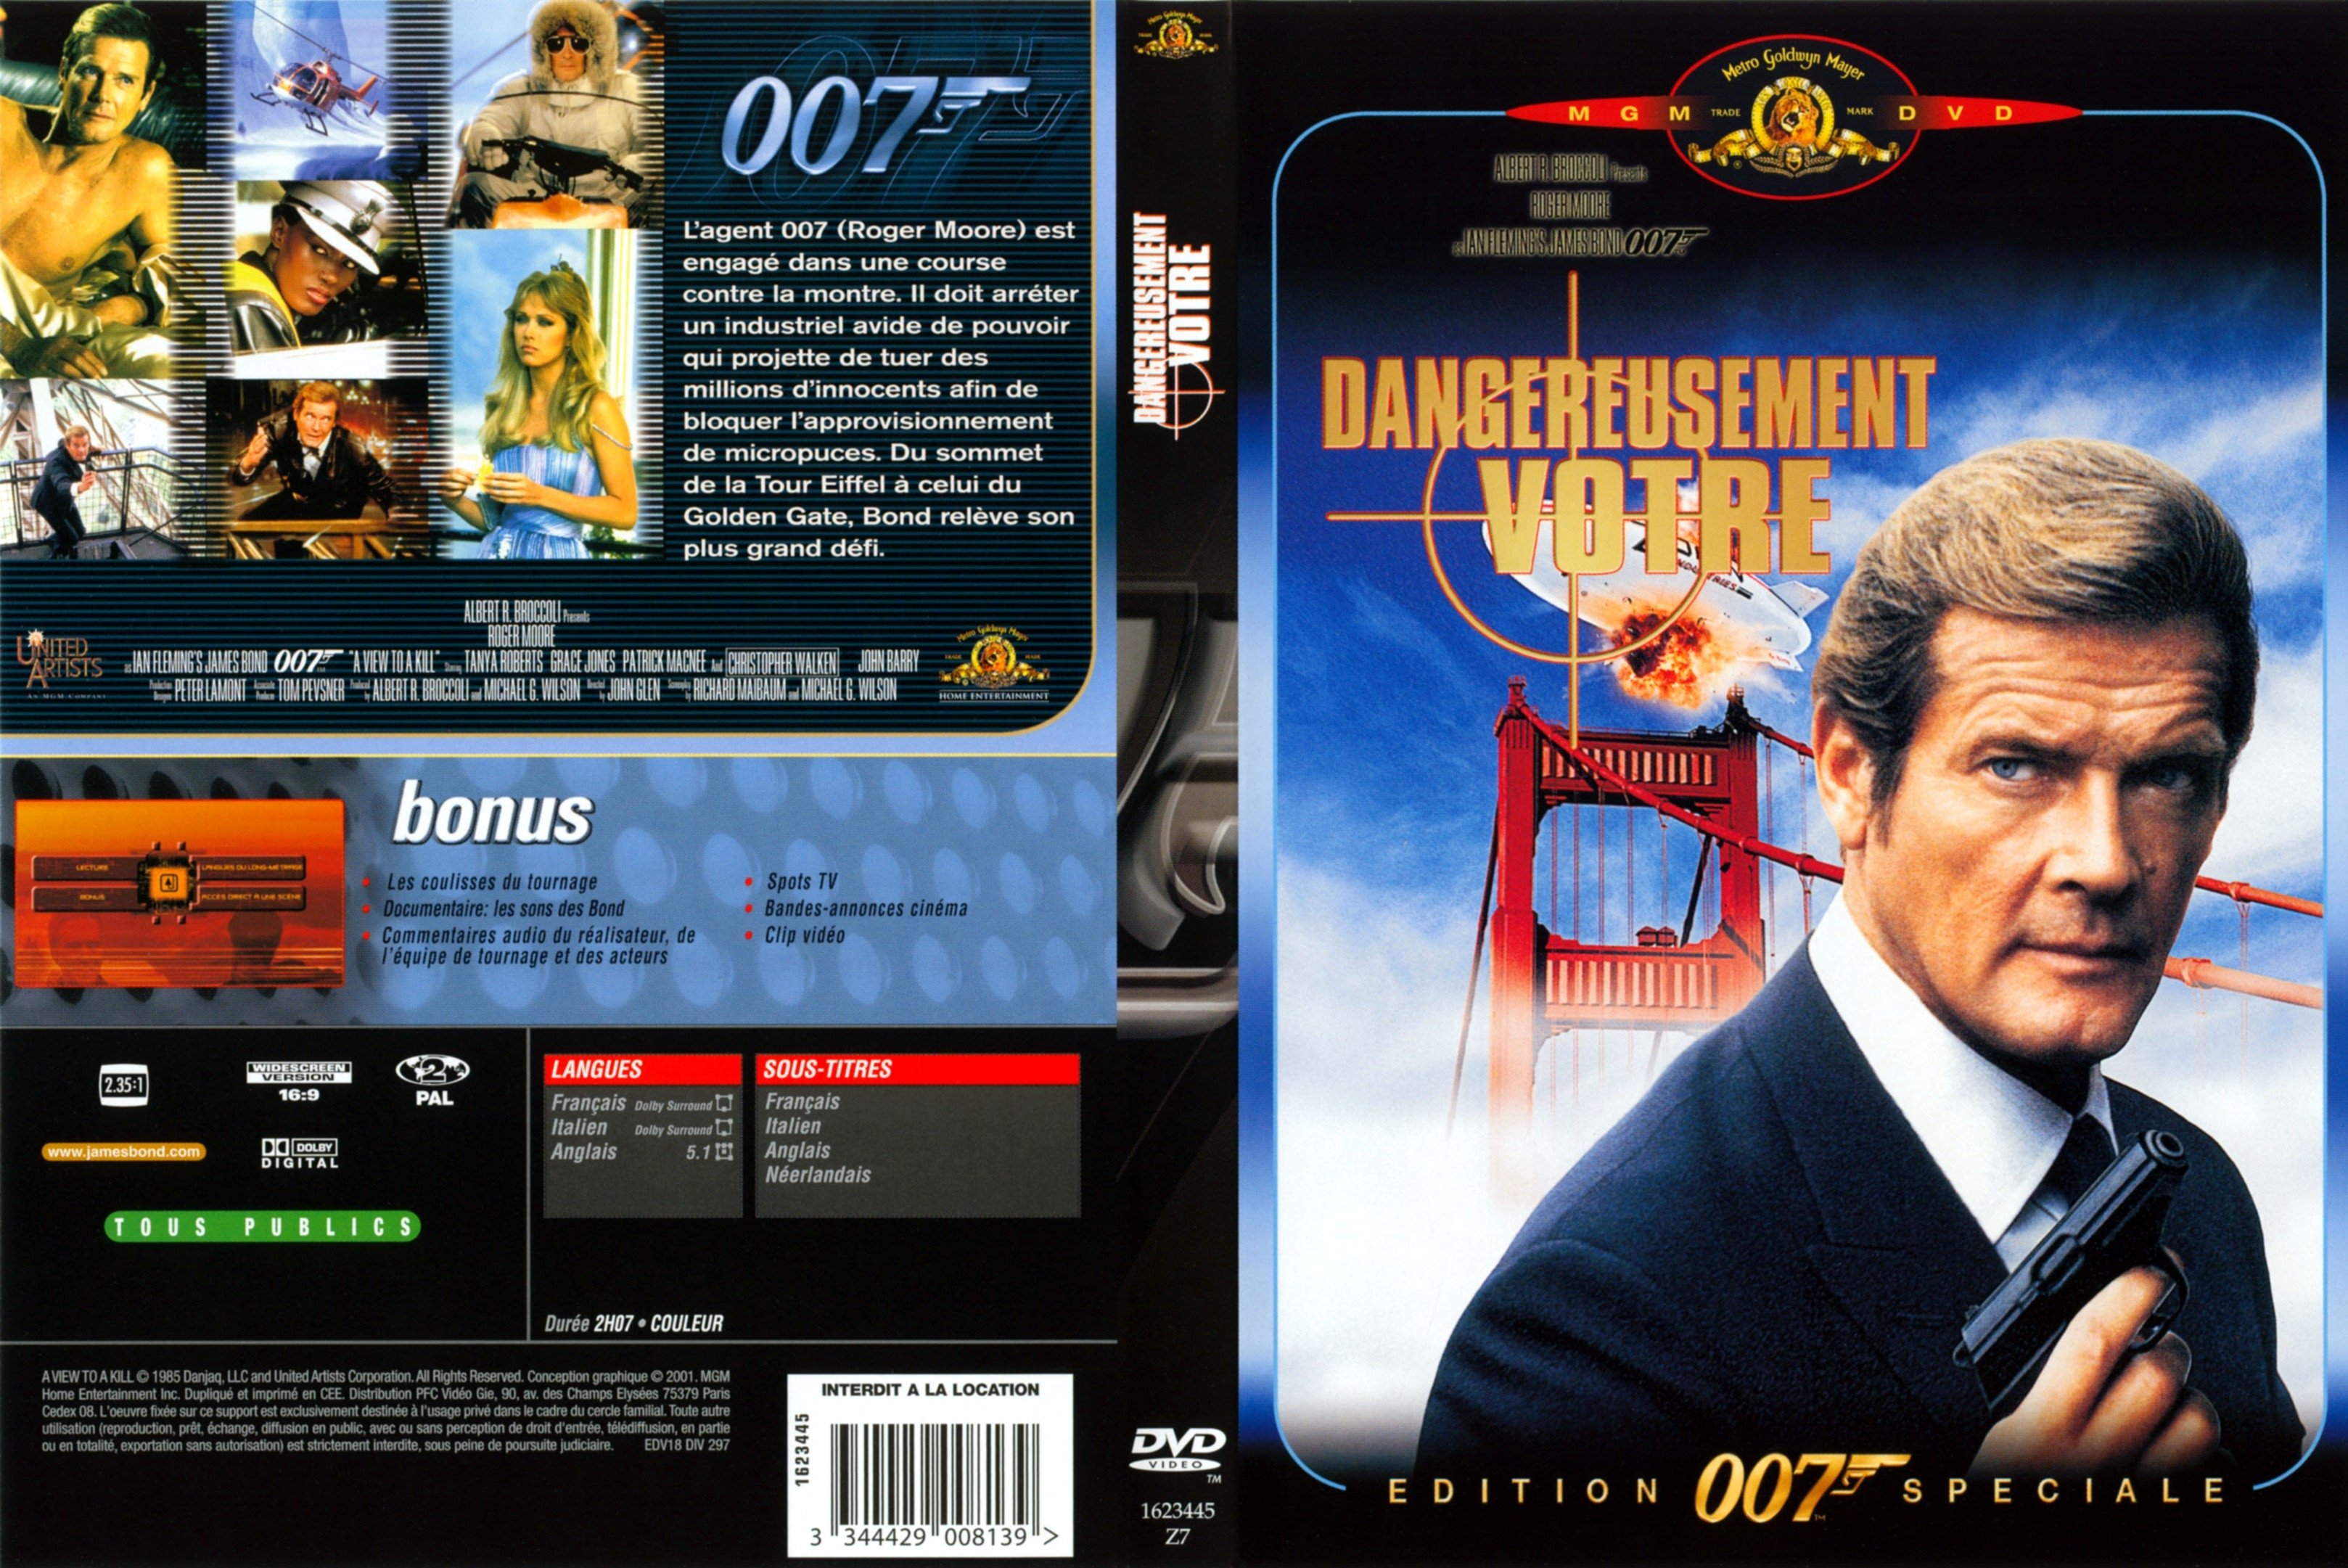 Jaquette DVD James Bond 007 Dangereusement votre